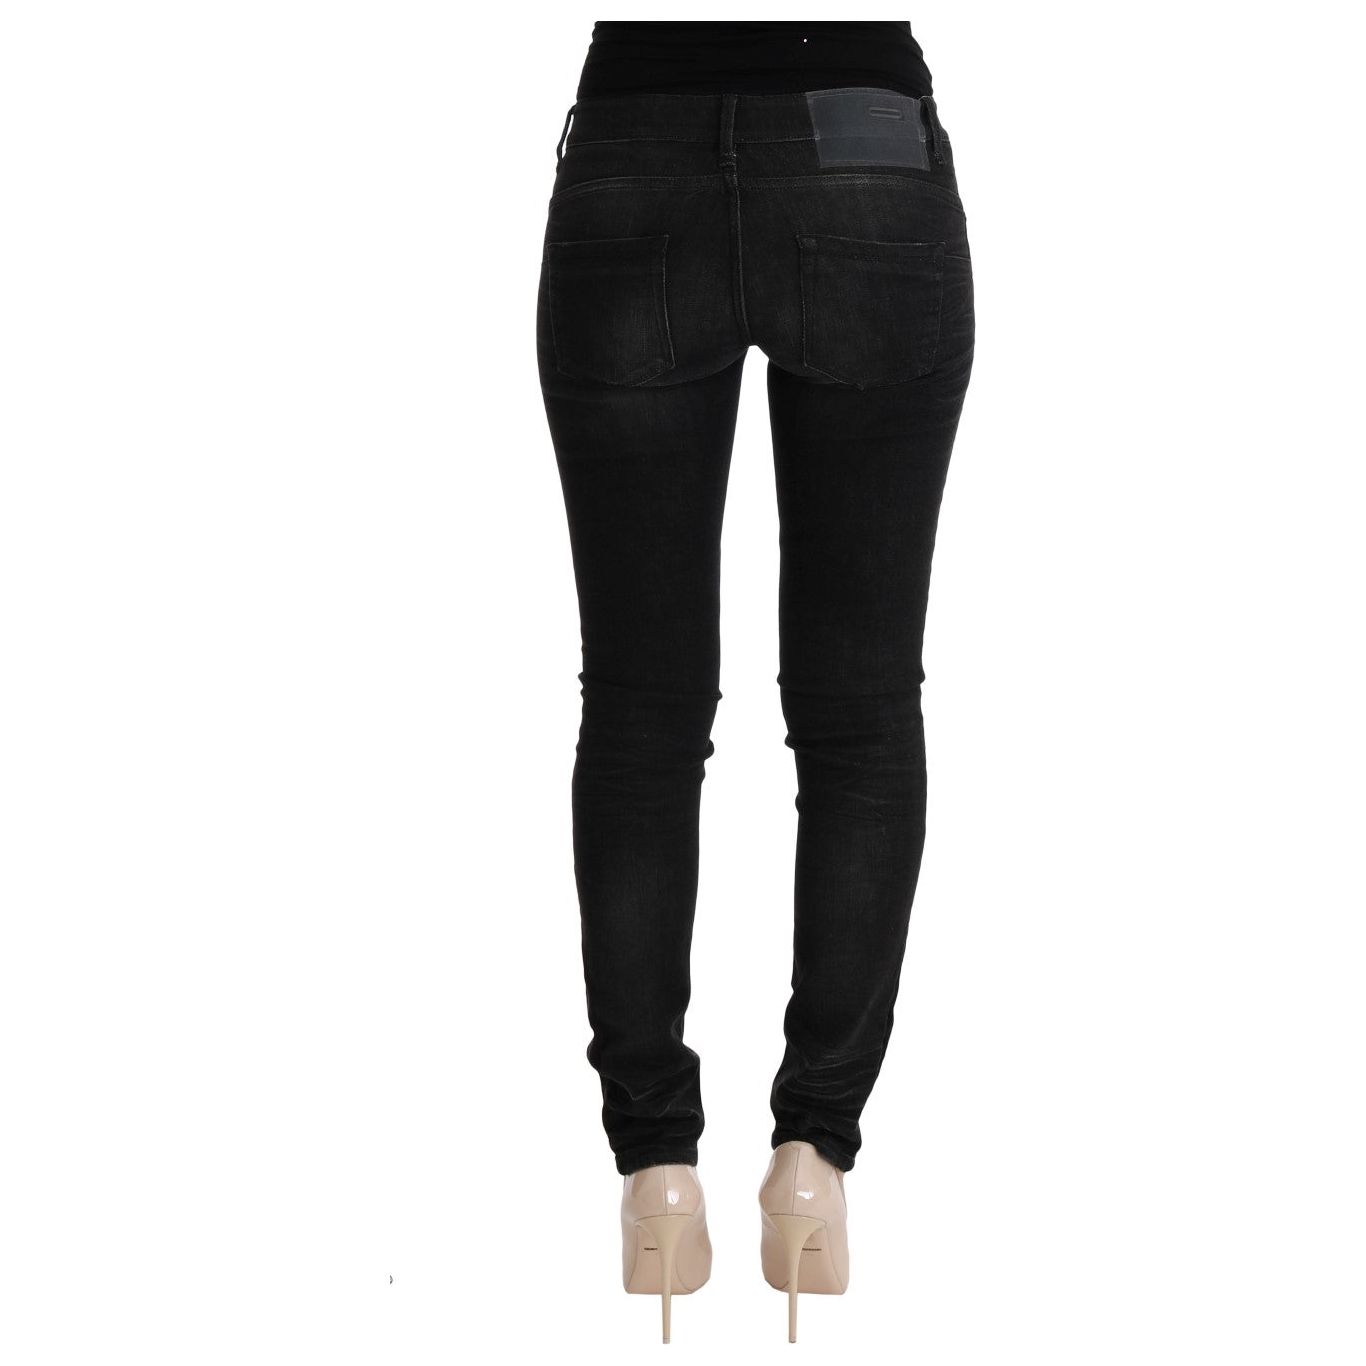 Acht Chic Slim Fit Black Cotton Jeans Jeans & Pants black-denim-cotton-bottoms-slim-fit-jeans 449507-black-denim-cotton-bottoms-slim-fit-jeans-2.jpg